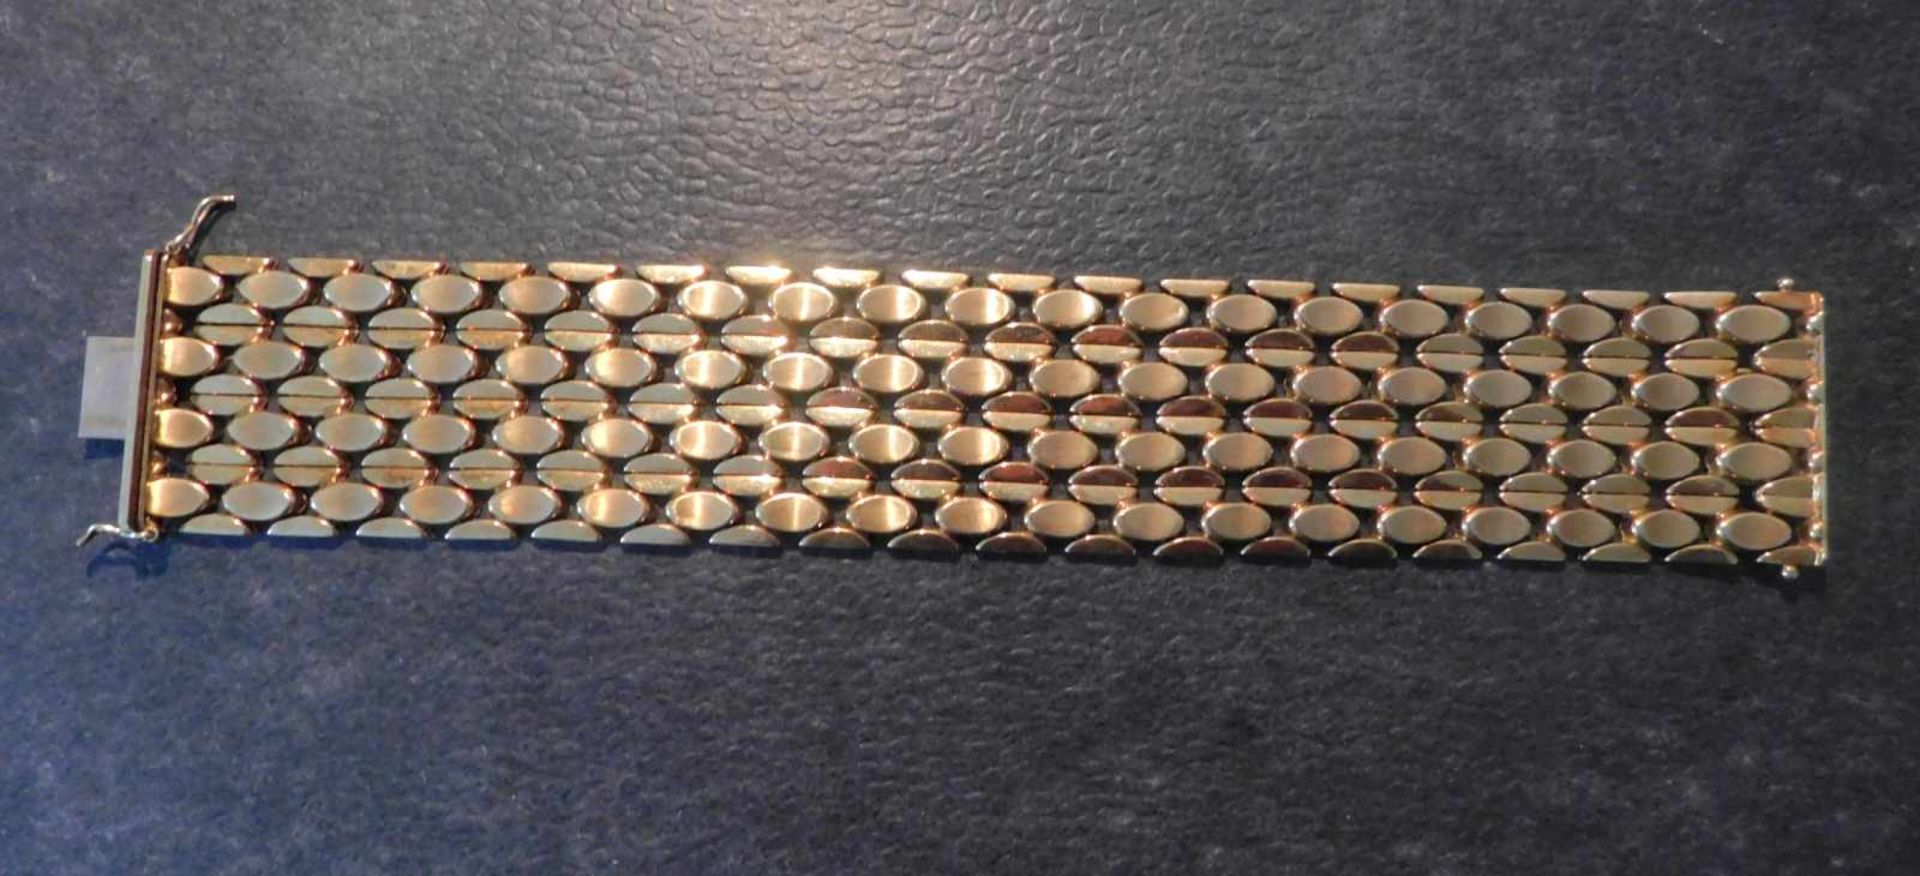 Armband, 585 Gelbgold, 3,5 cm breit, 50,2 g, Steckschloss mit 2 SicherheitsachtenLänge 19,7 cm, - Image 3 of 5